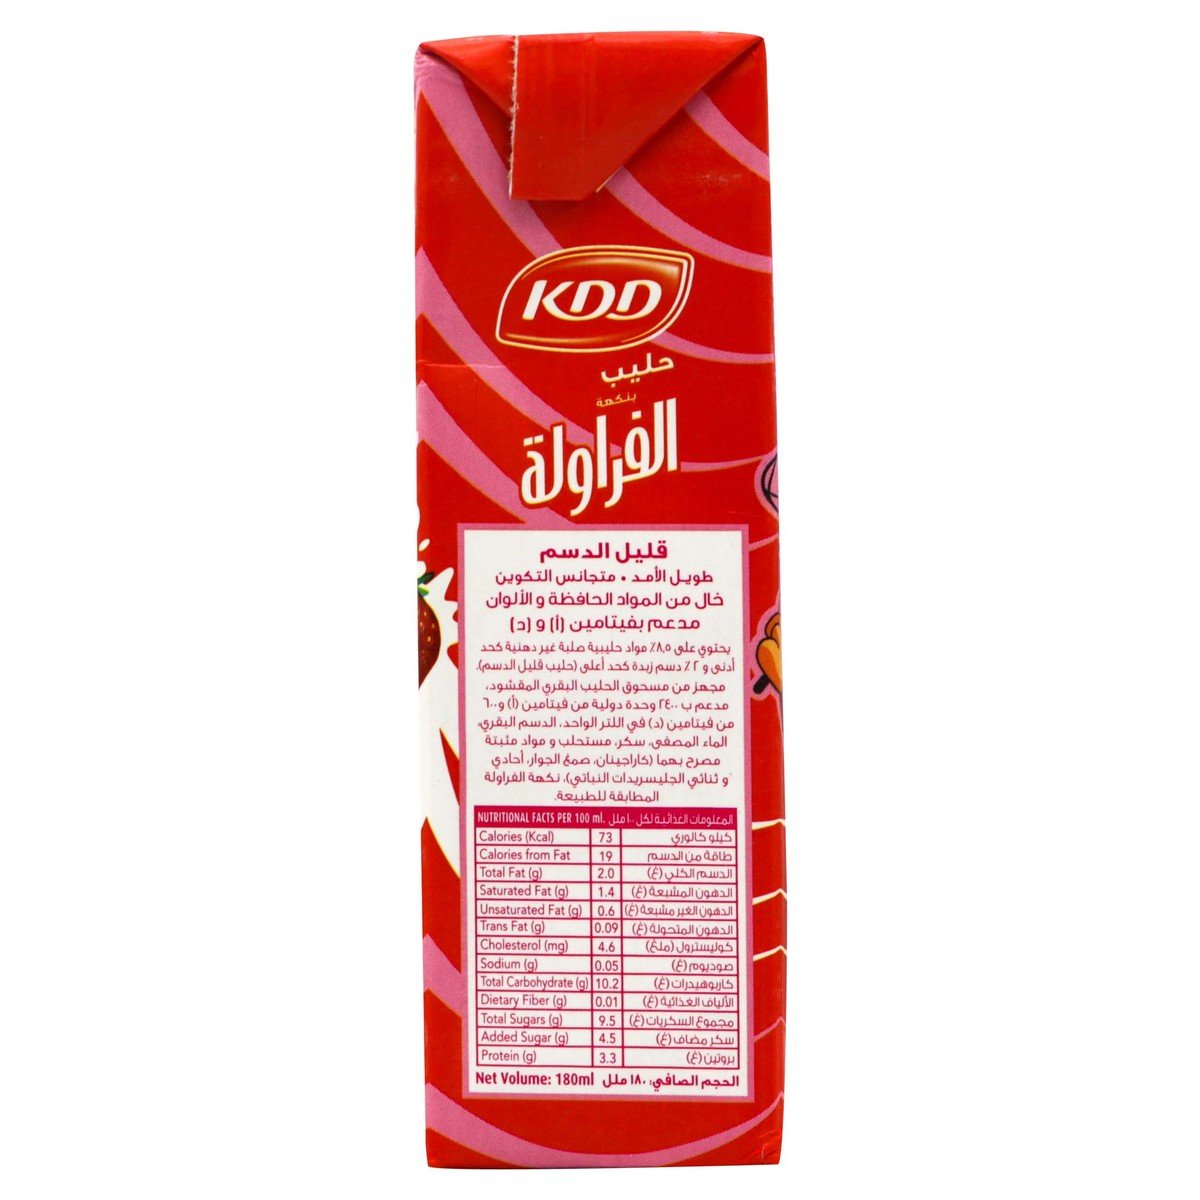 KDD Strawberry Flavoured Milk 18 x 180 ml